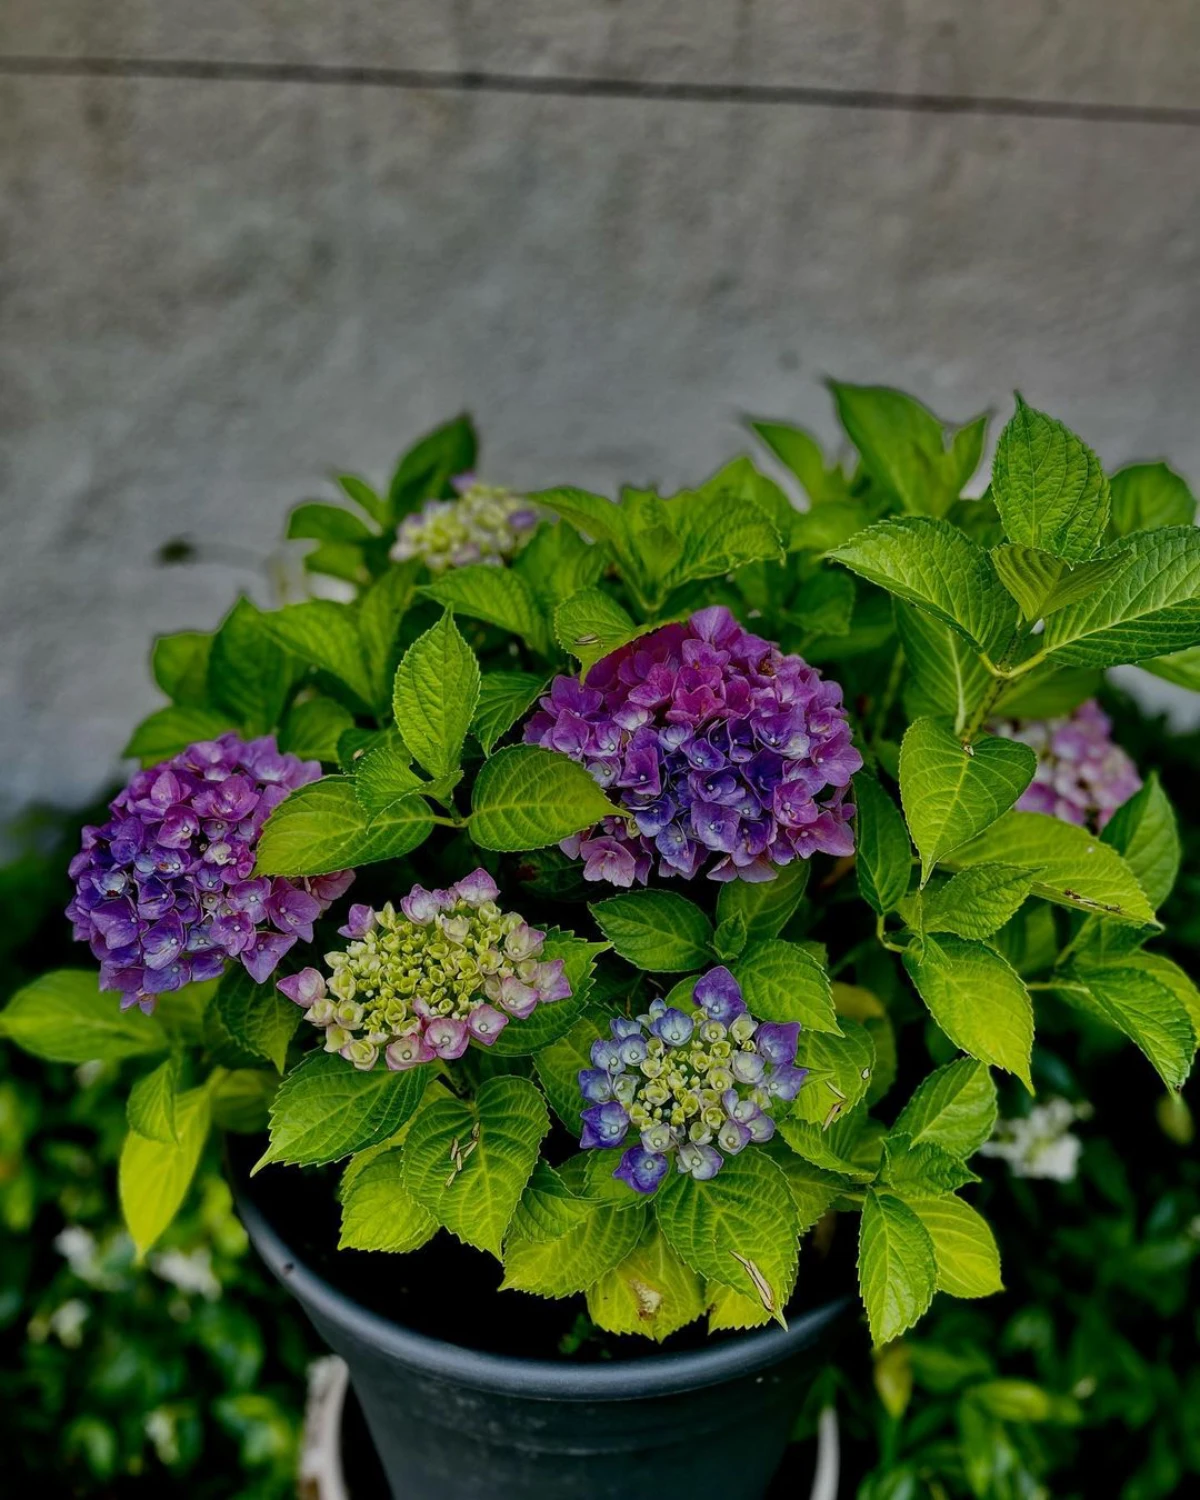 entretien de l hortenisa en pot fleurs violettes feuilles vertes